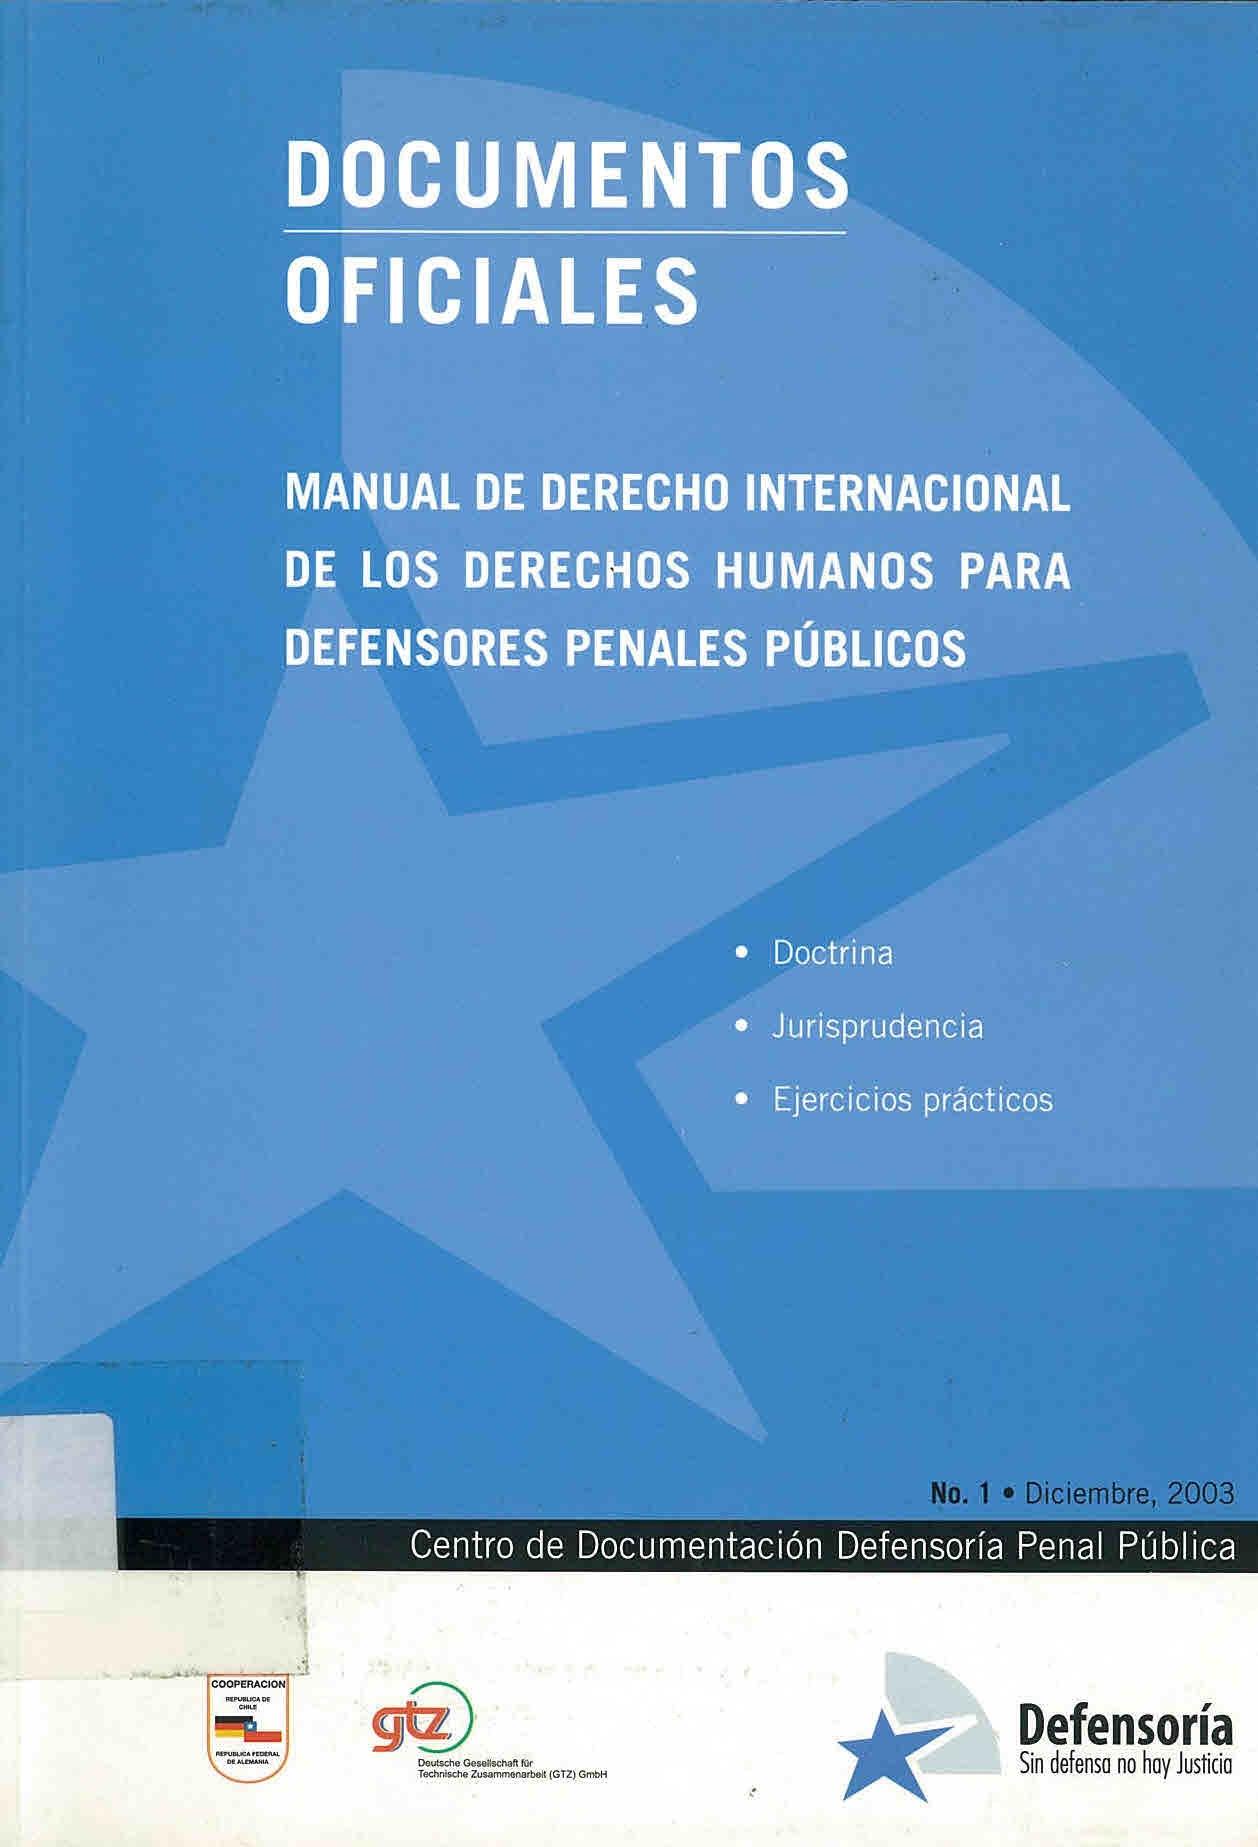 Manual de Derecho Internacional de los DD. HH. para Defensores Penales